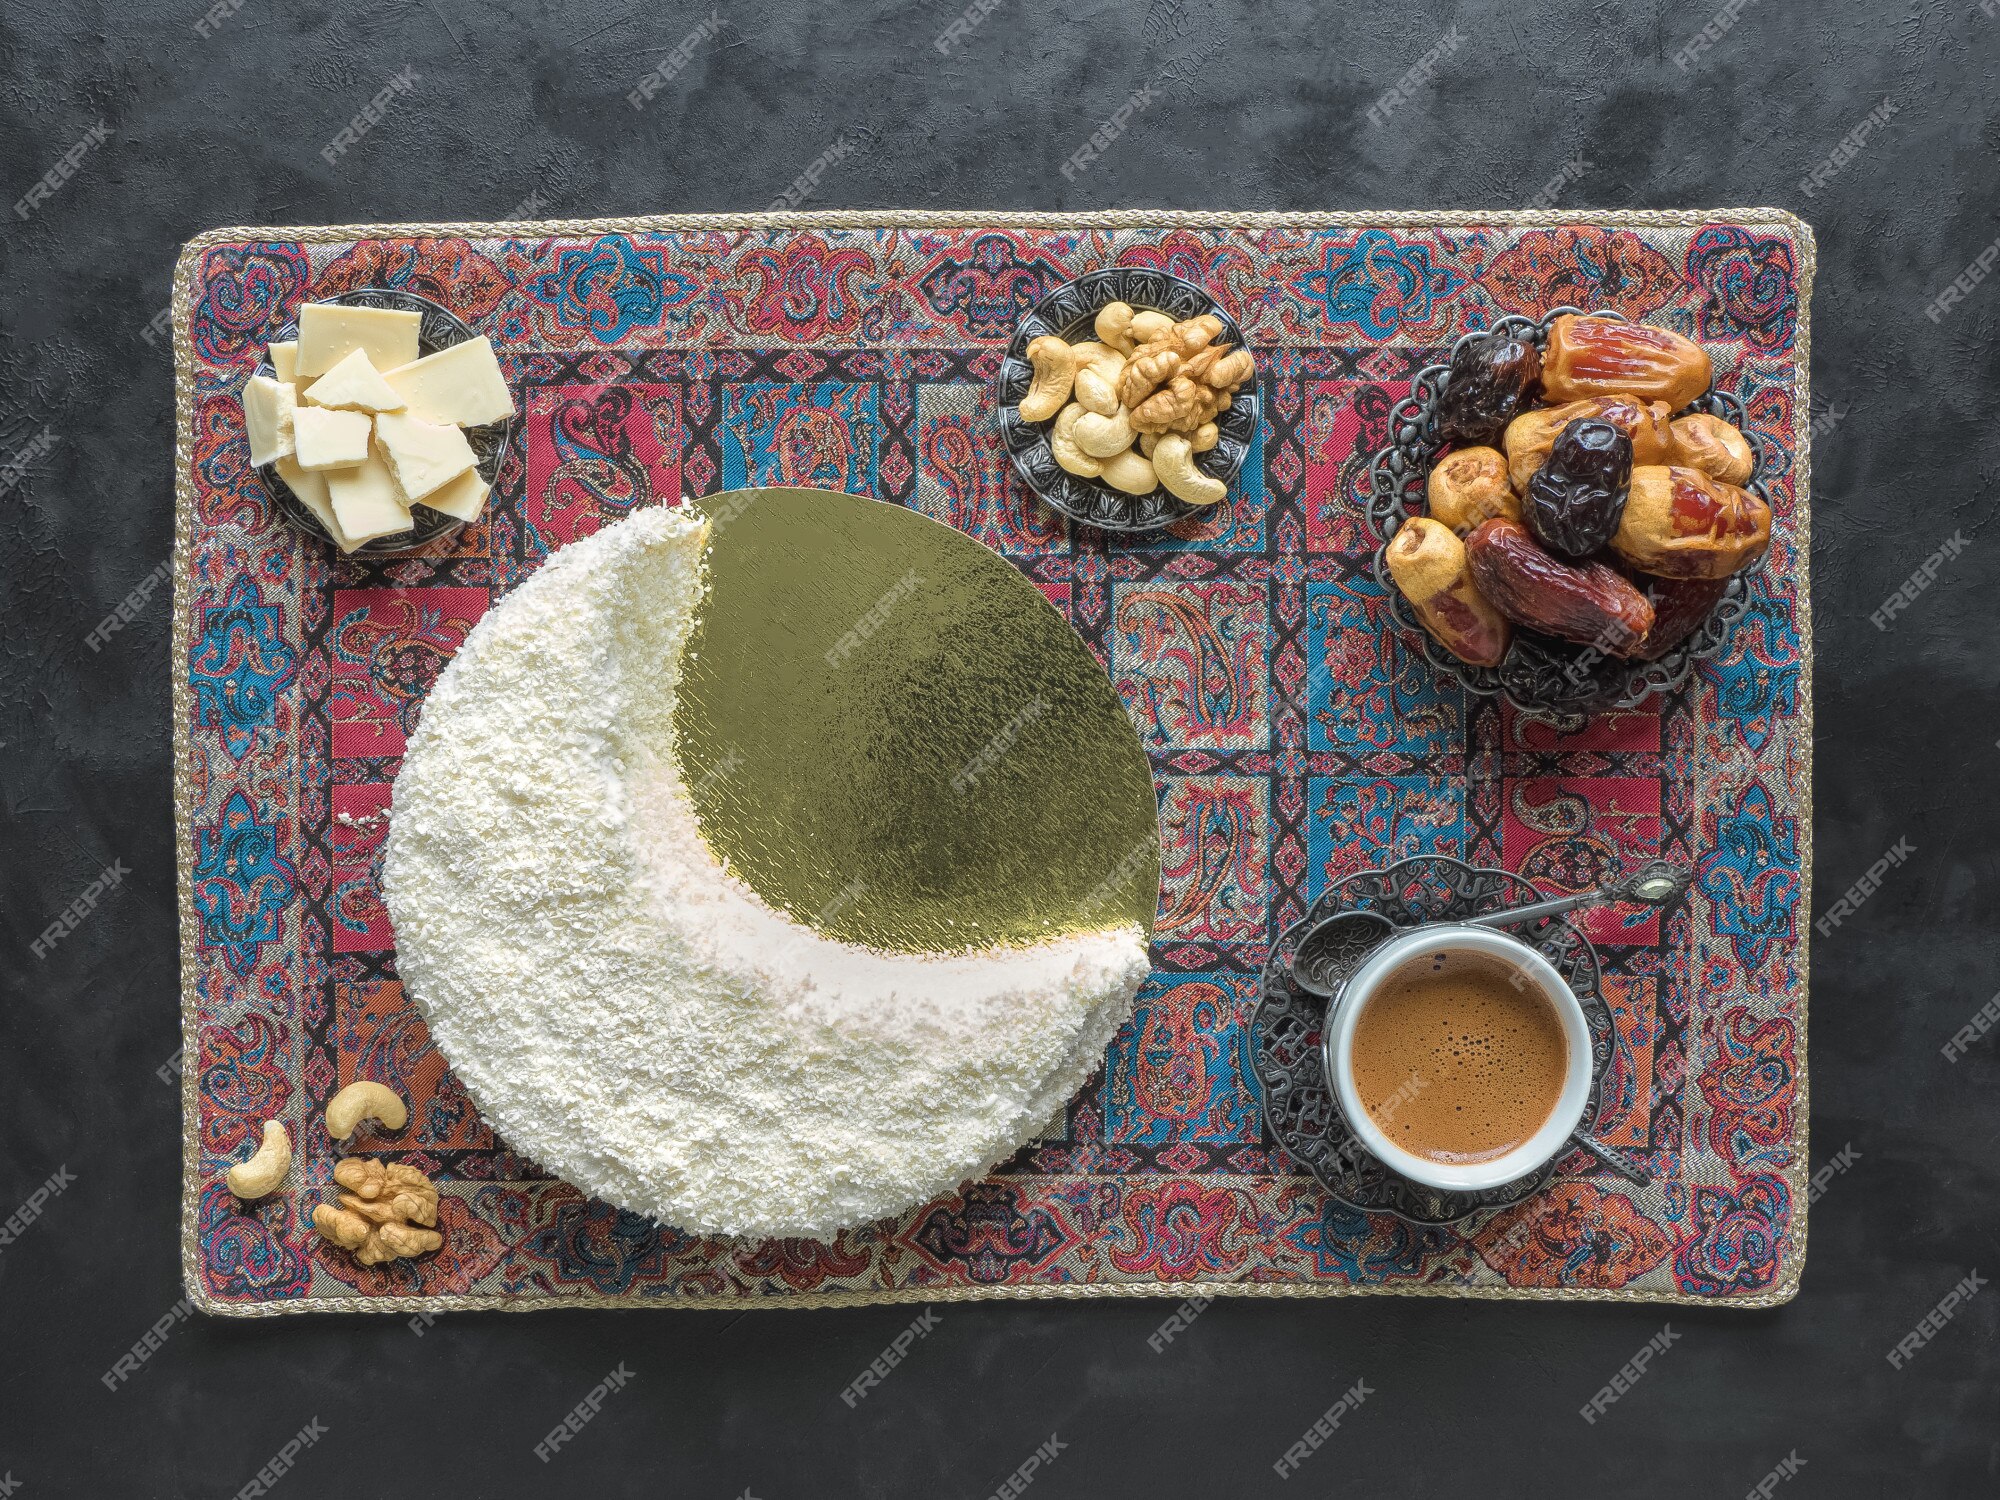 Masala Chai Recipe - The Delicious Crescent